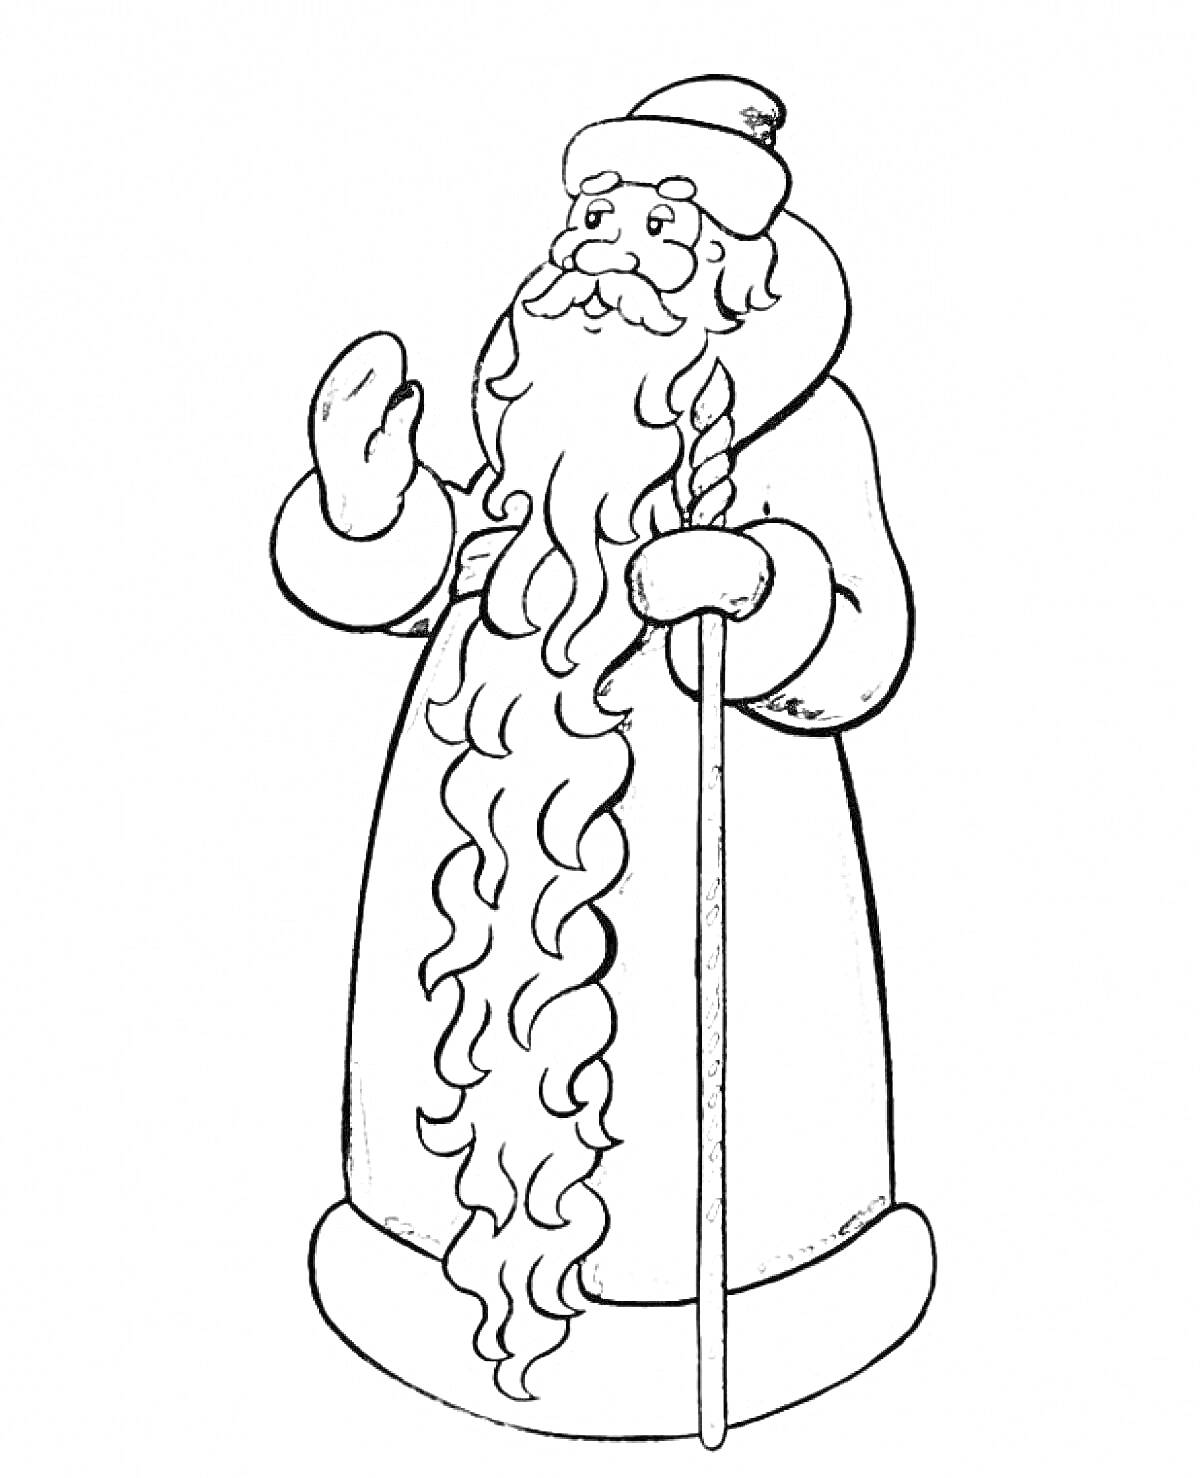 Раскраска Дед Мороз с длинной бородой, в шапке, одежде и с посохом, поднявший правую руку